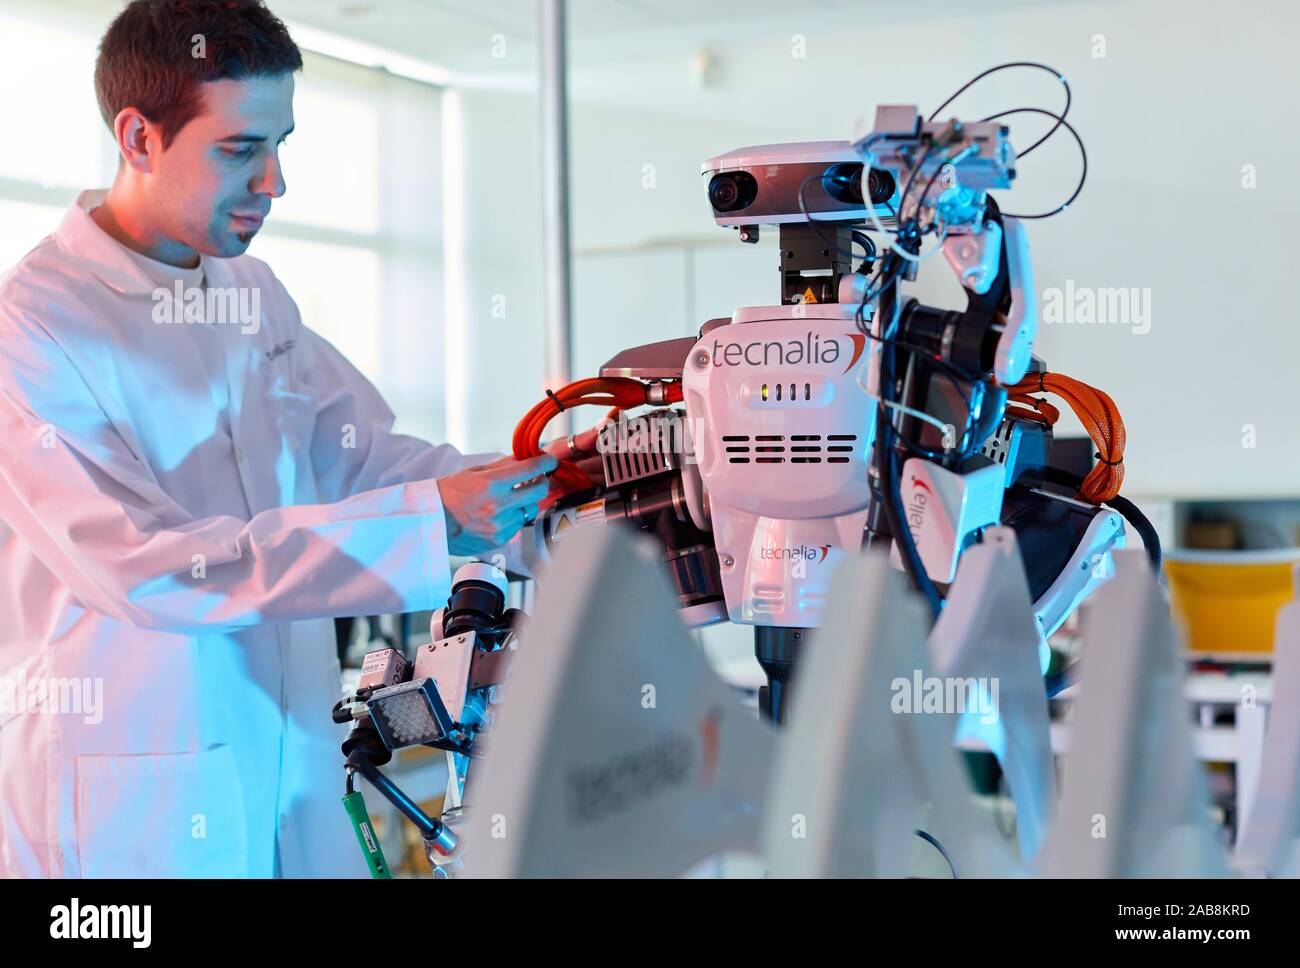 Autonomia di robot per la produzione flessibile e collaborativa, robotica avanzata unità di fabbricazione, Technology Center, Tecnalia Ricerca & Innovazione, Foto Stock